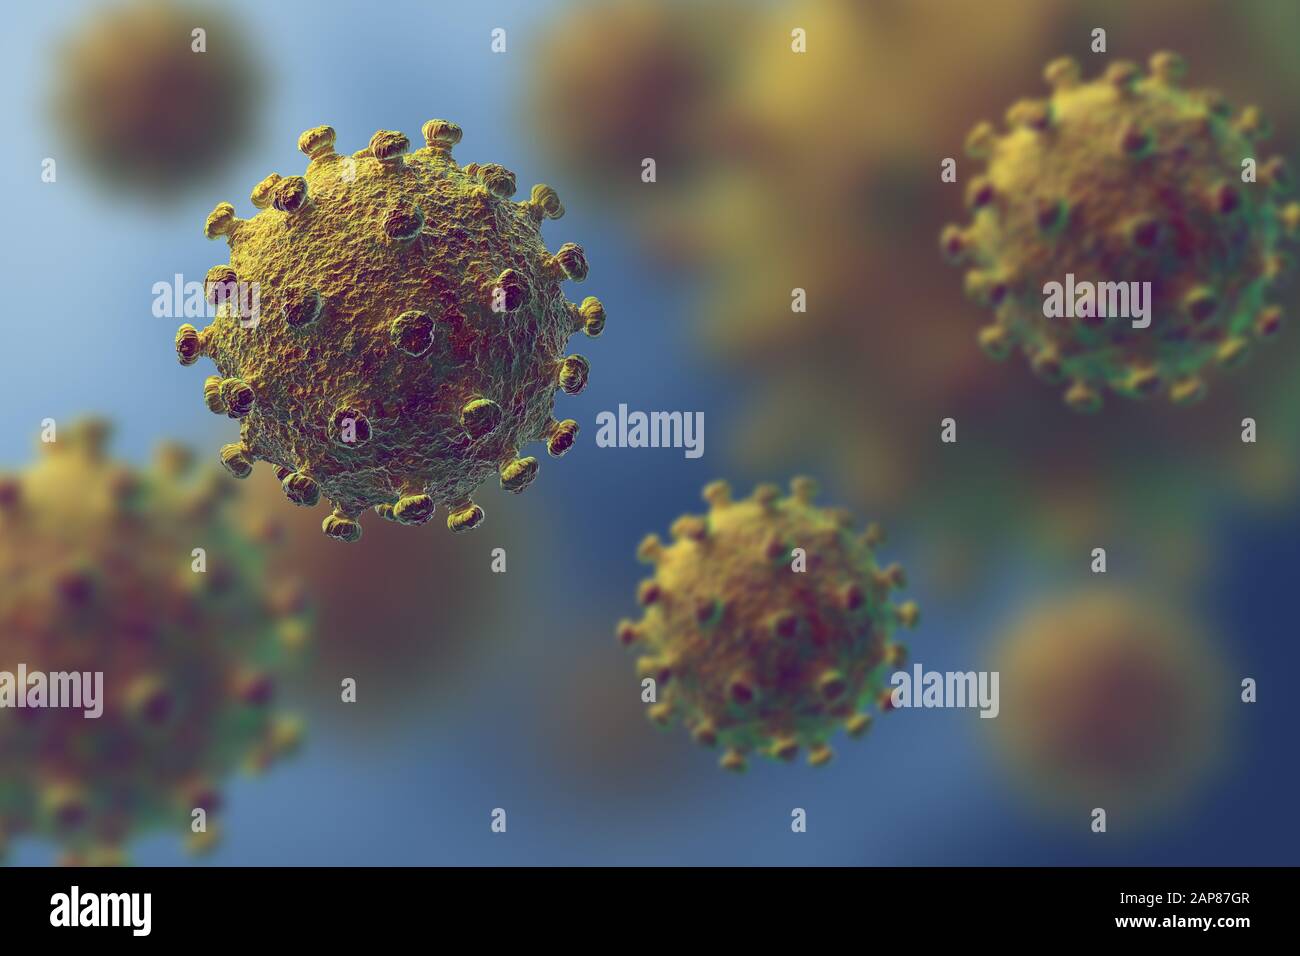 Virus de la grippe ou du VIH flottant dans une vue microscopique fluide, concept de pandémie ou d'infection virale - illustration tridimensionnelle Banque D'Images